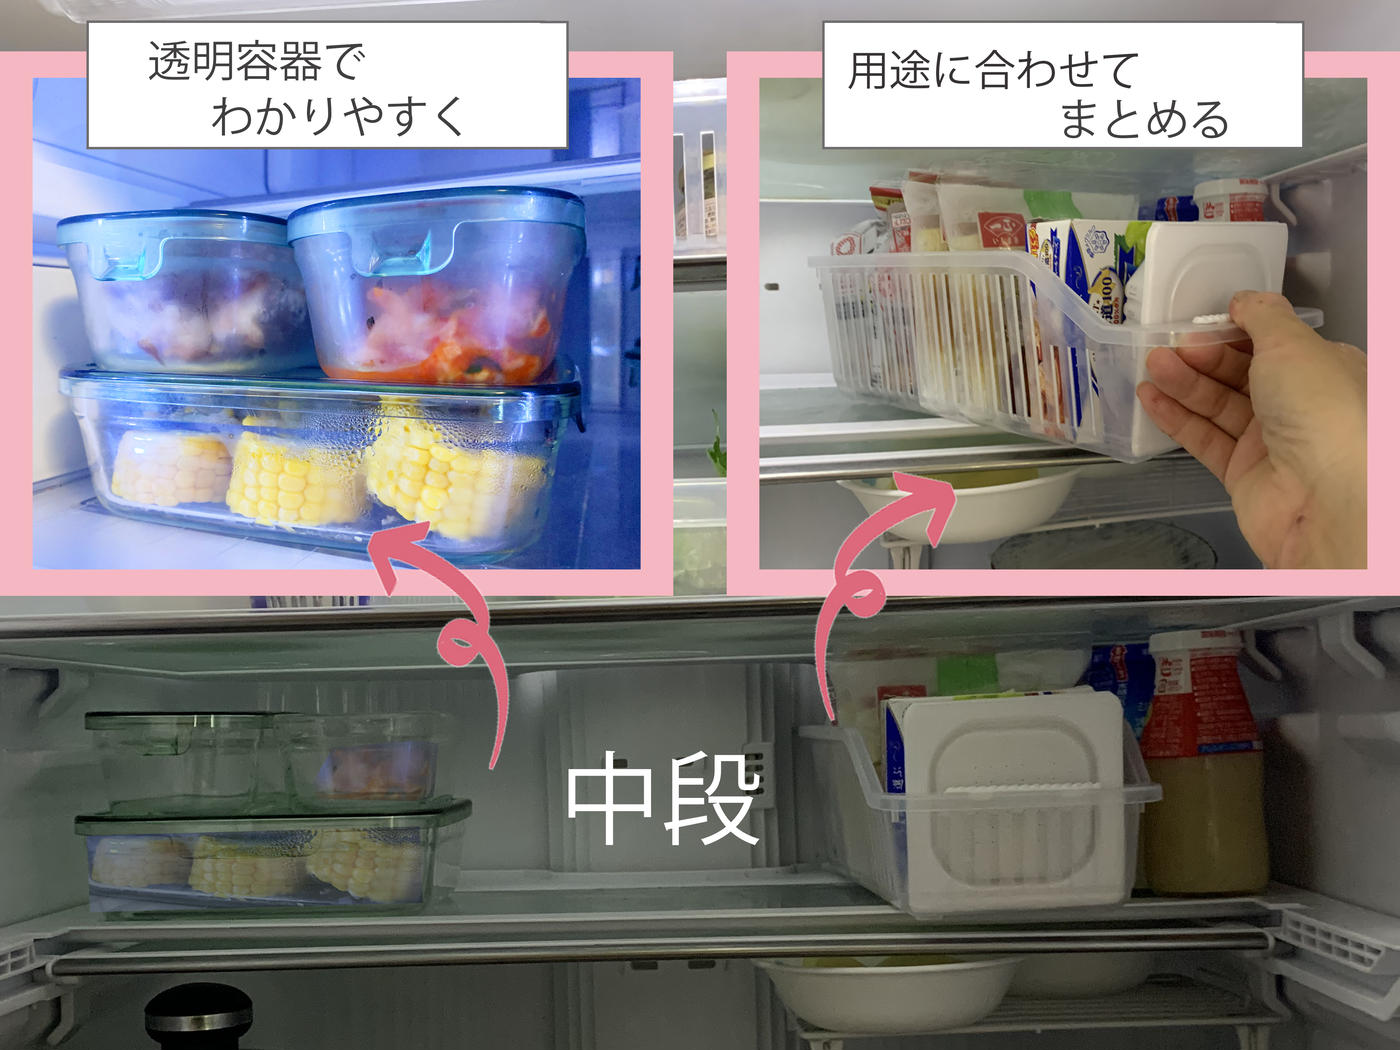 冷蔵庫の中身をすっきり収納するには 100円ショップのアイテムを活用してプロが実演 トクバイニュース